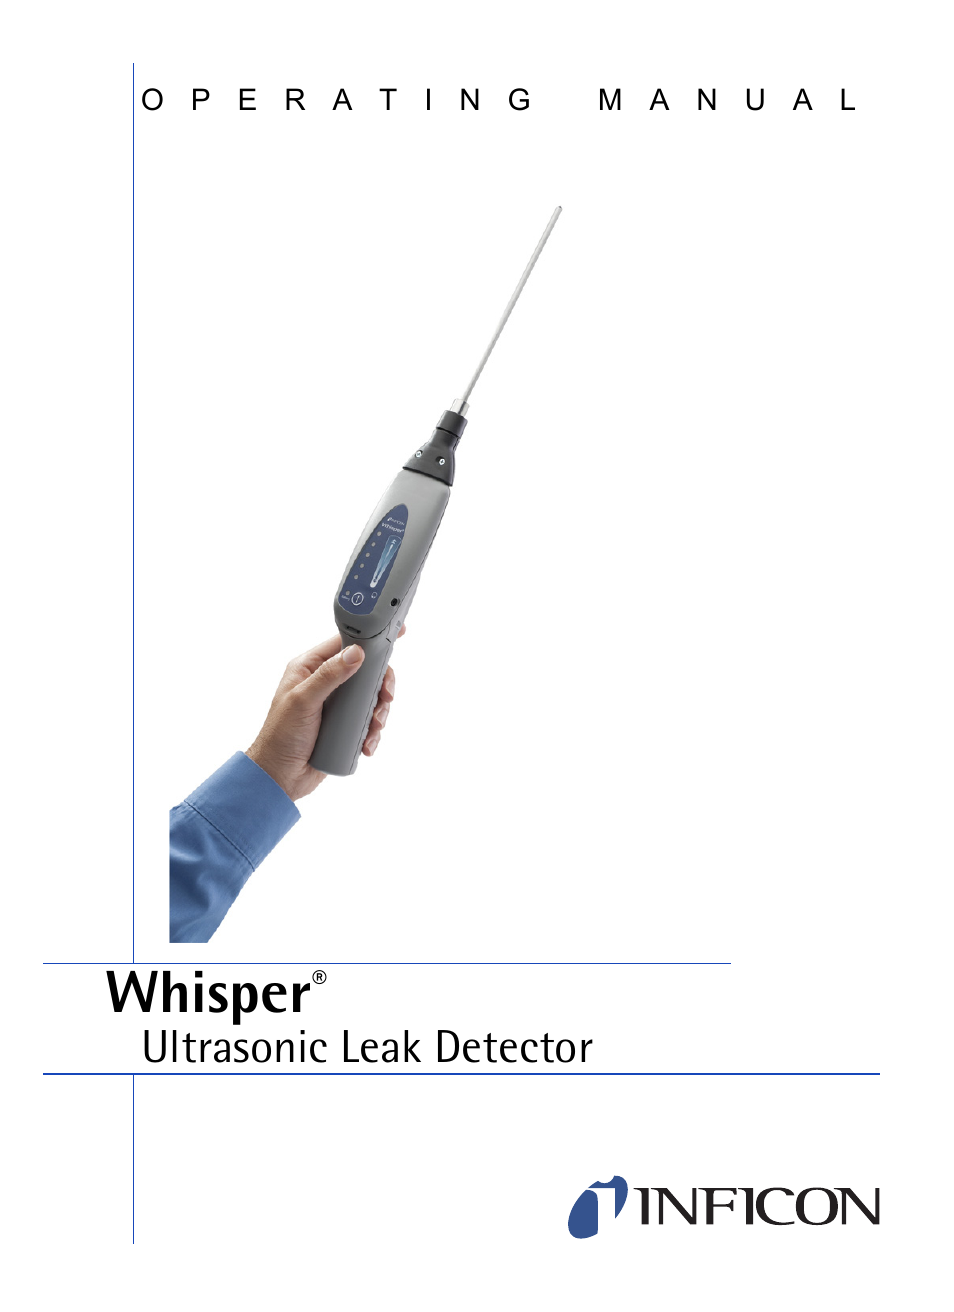 Whisper Ultrasonic Leak Detector